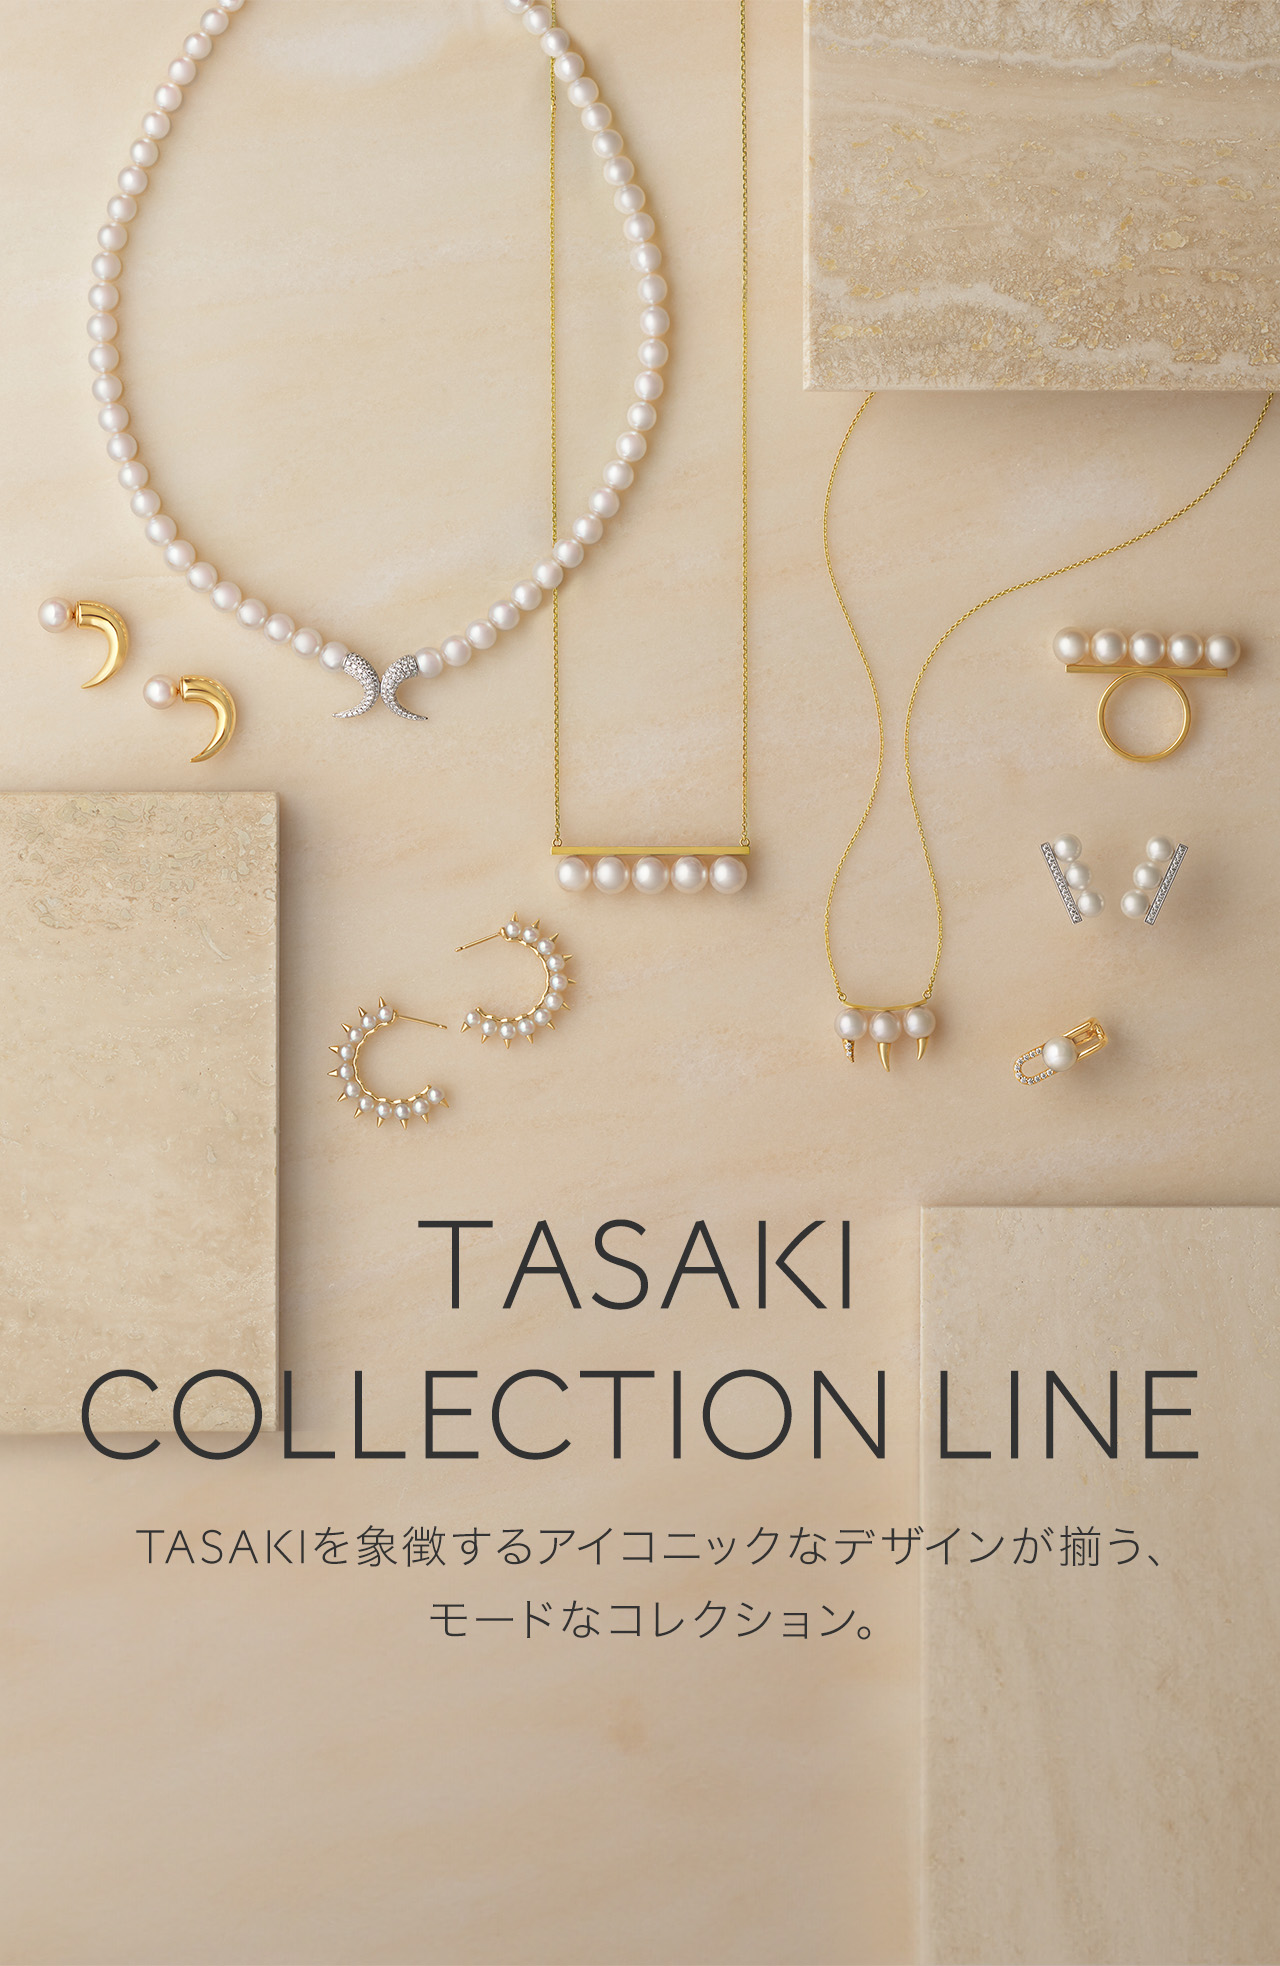 TASAKIタサキ 公式サイト   オンラインストア